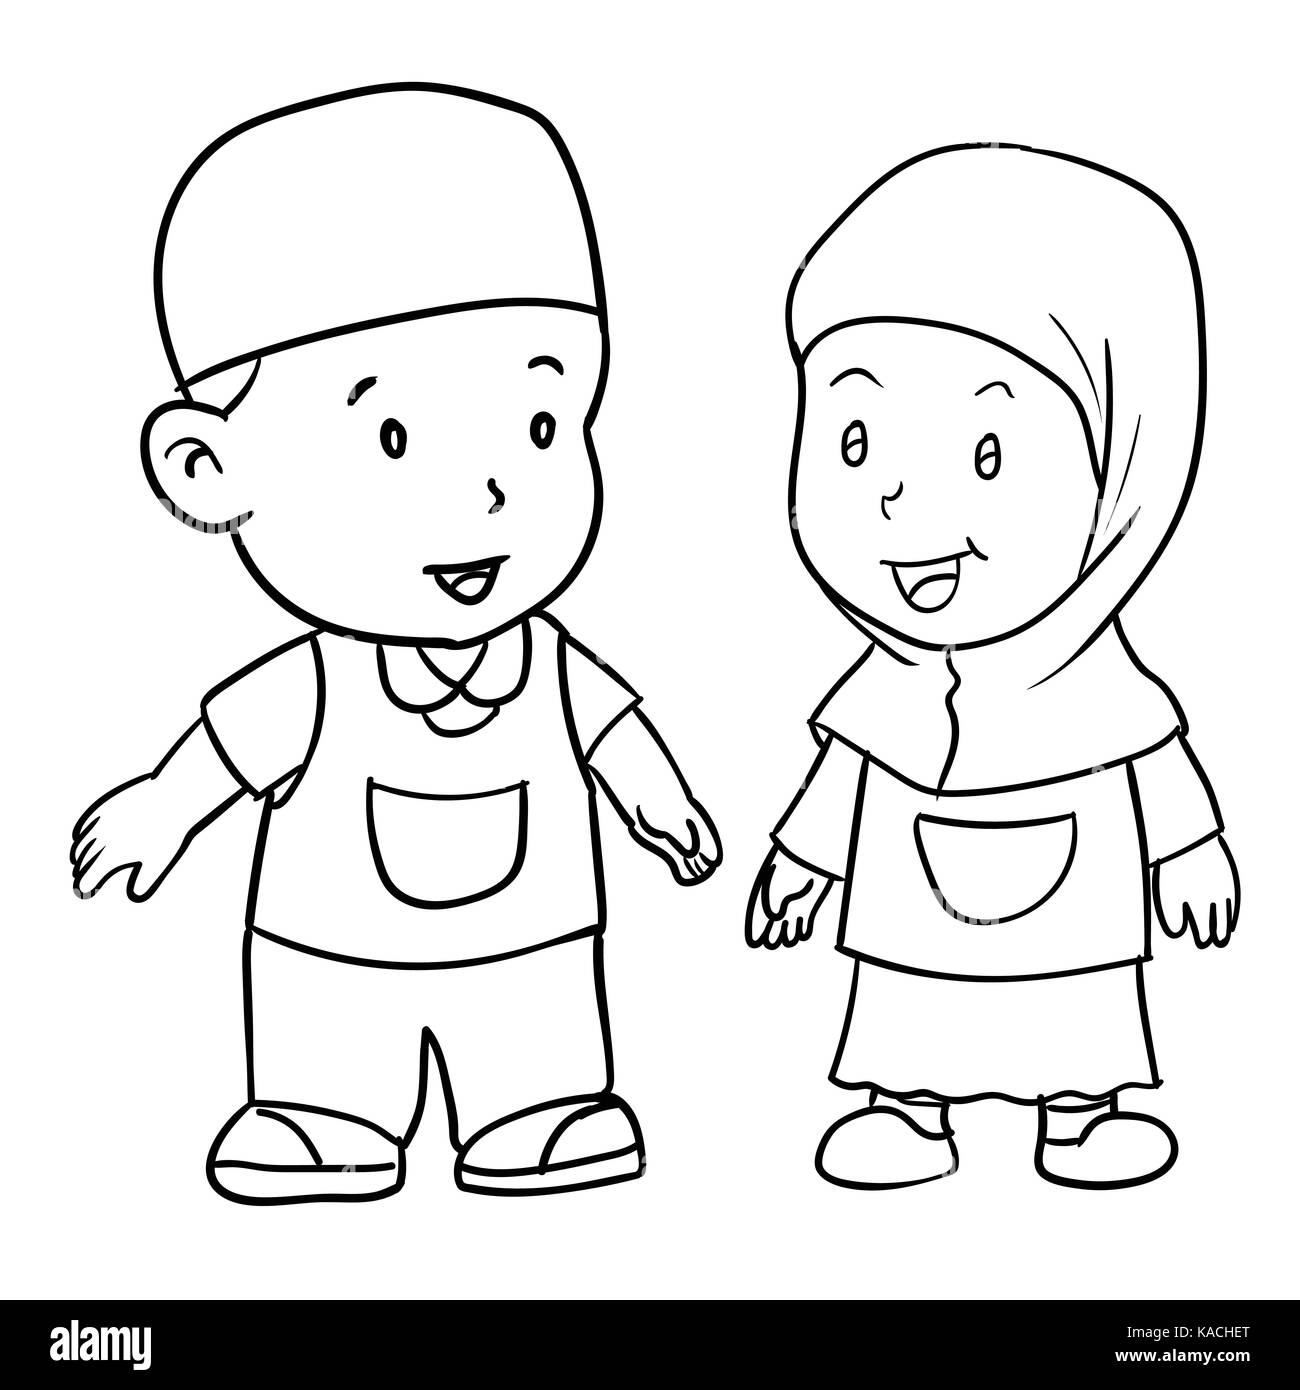 Мусульманские раскраски для детей мальчиков и детей девочек